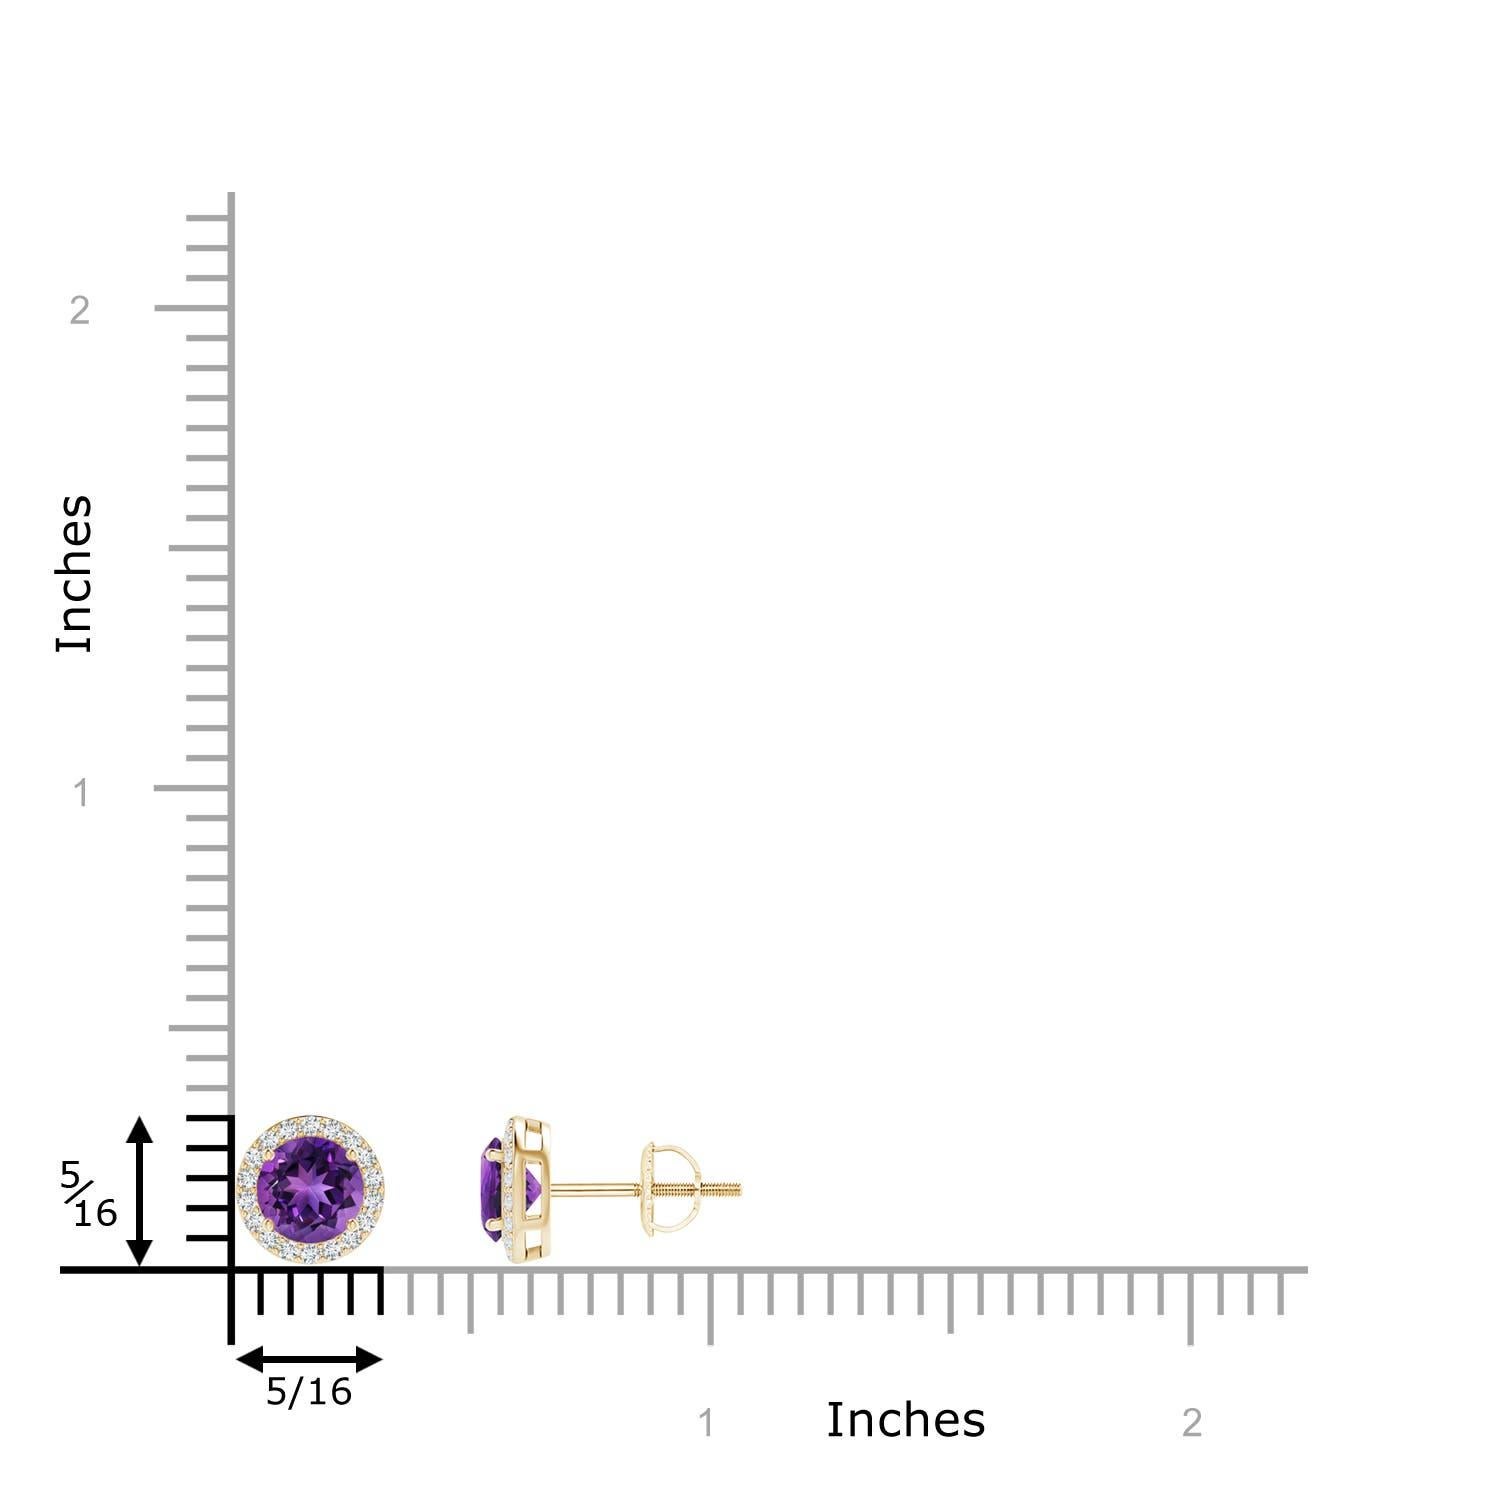 Bezaubernde runde Amethyste sind bei diesem spektakulären Paar Ohrstecker in schimmernde Diamantringe eingefasst. Er hat ein klassisches Aussehen und ist aus 14k Gelbgold gefertigt. Die Amethyste und Diamanten sind in einer Zackenfassung gefasst und